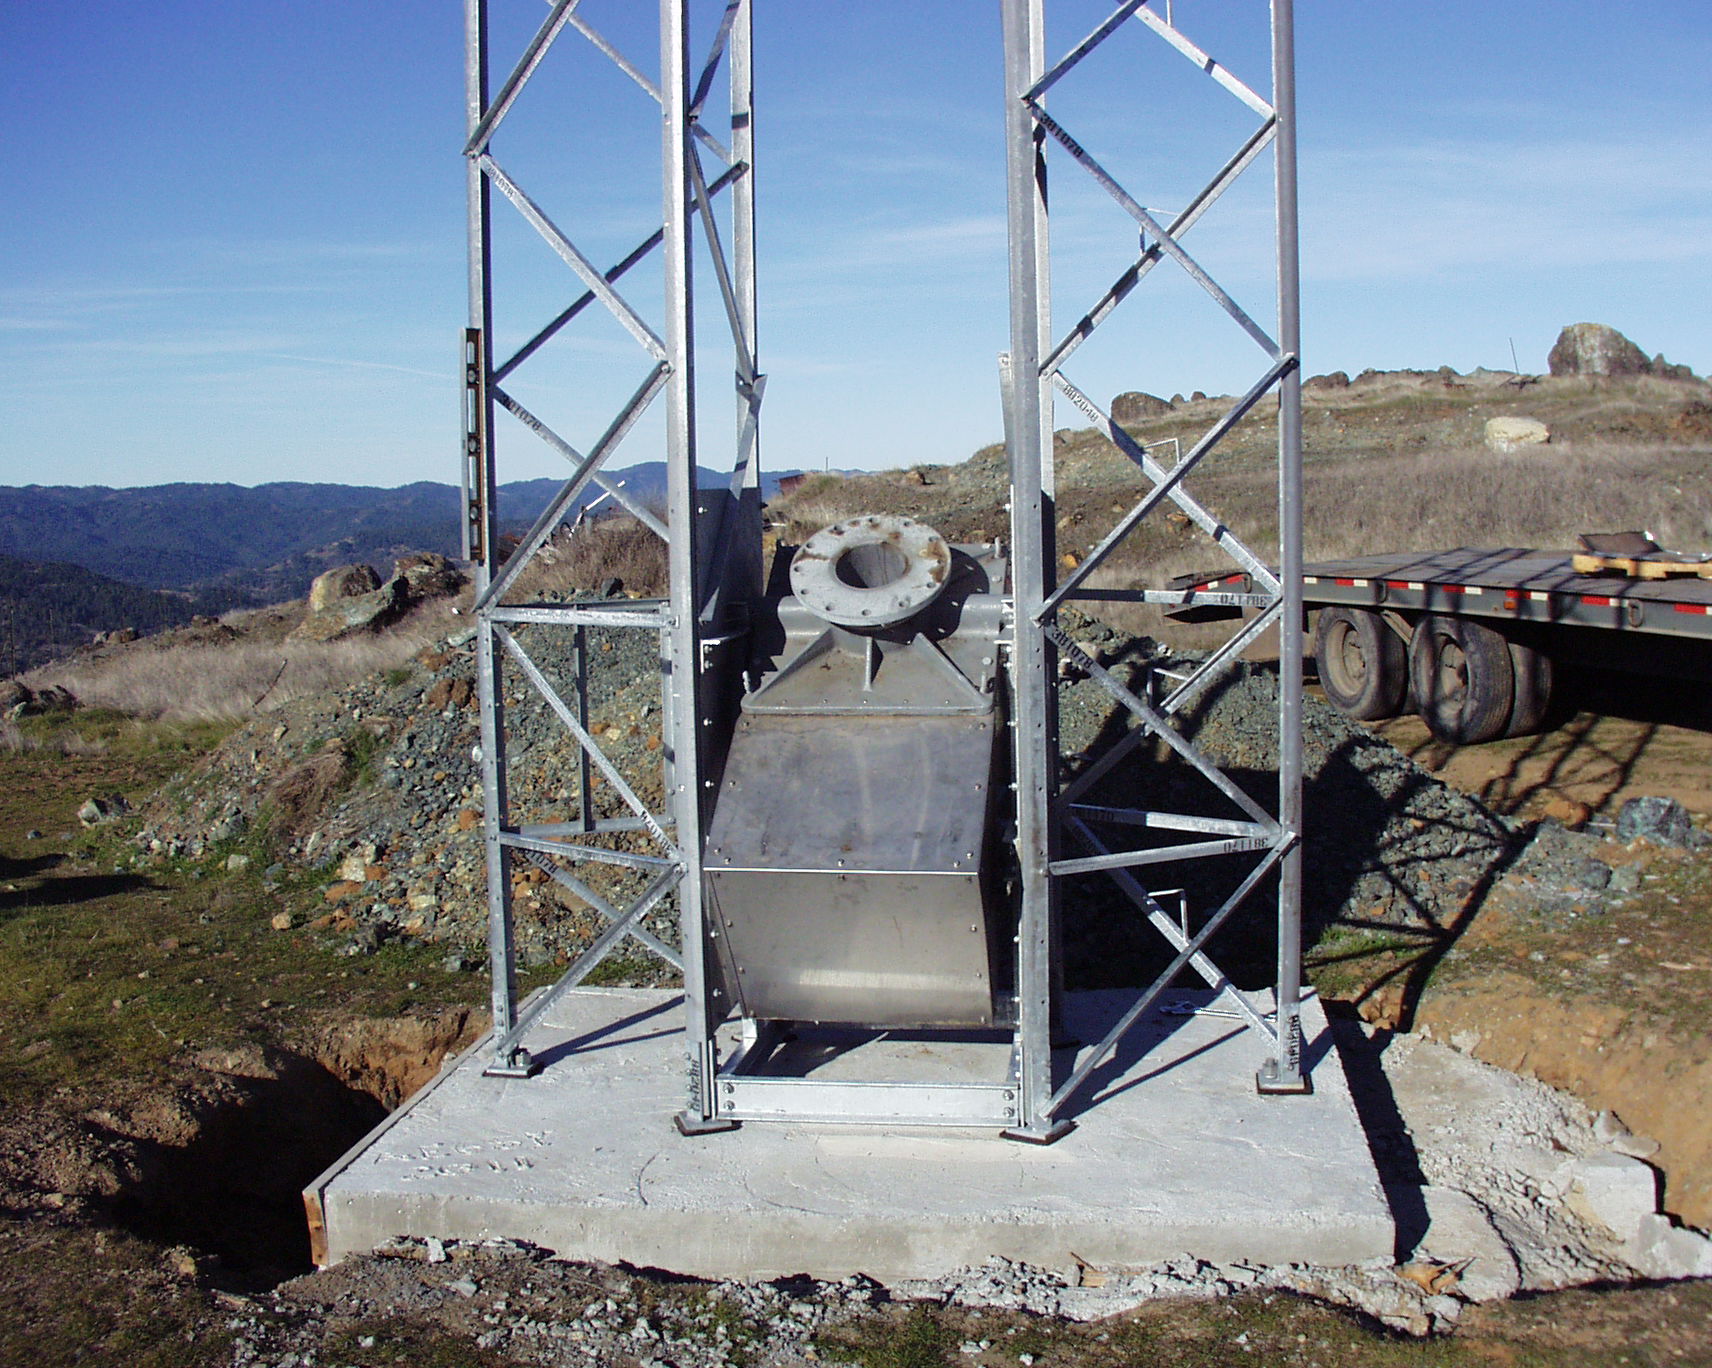 Rotor in Base